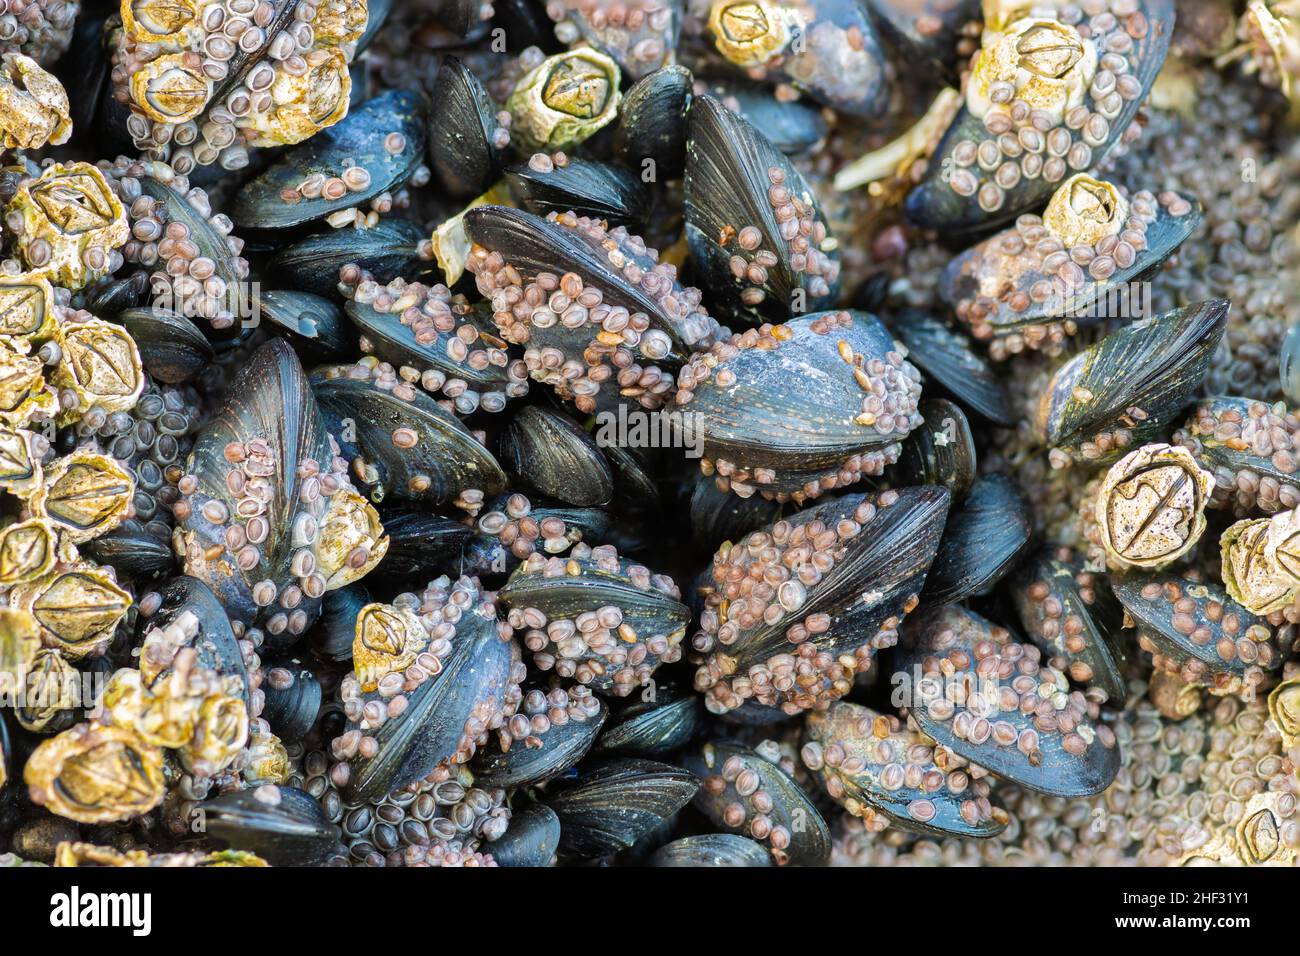 Nahaufnahme von Muscheln, die mit Seepocken bedeckt sind Stockfoto